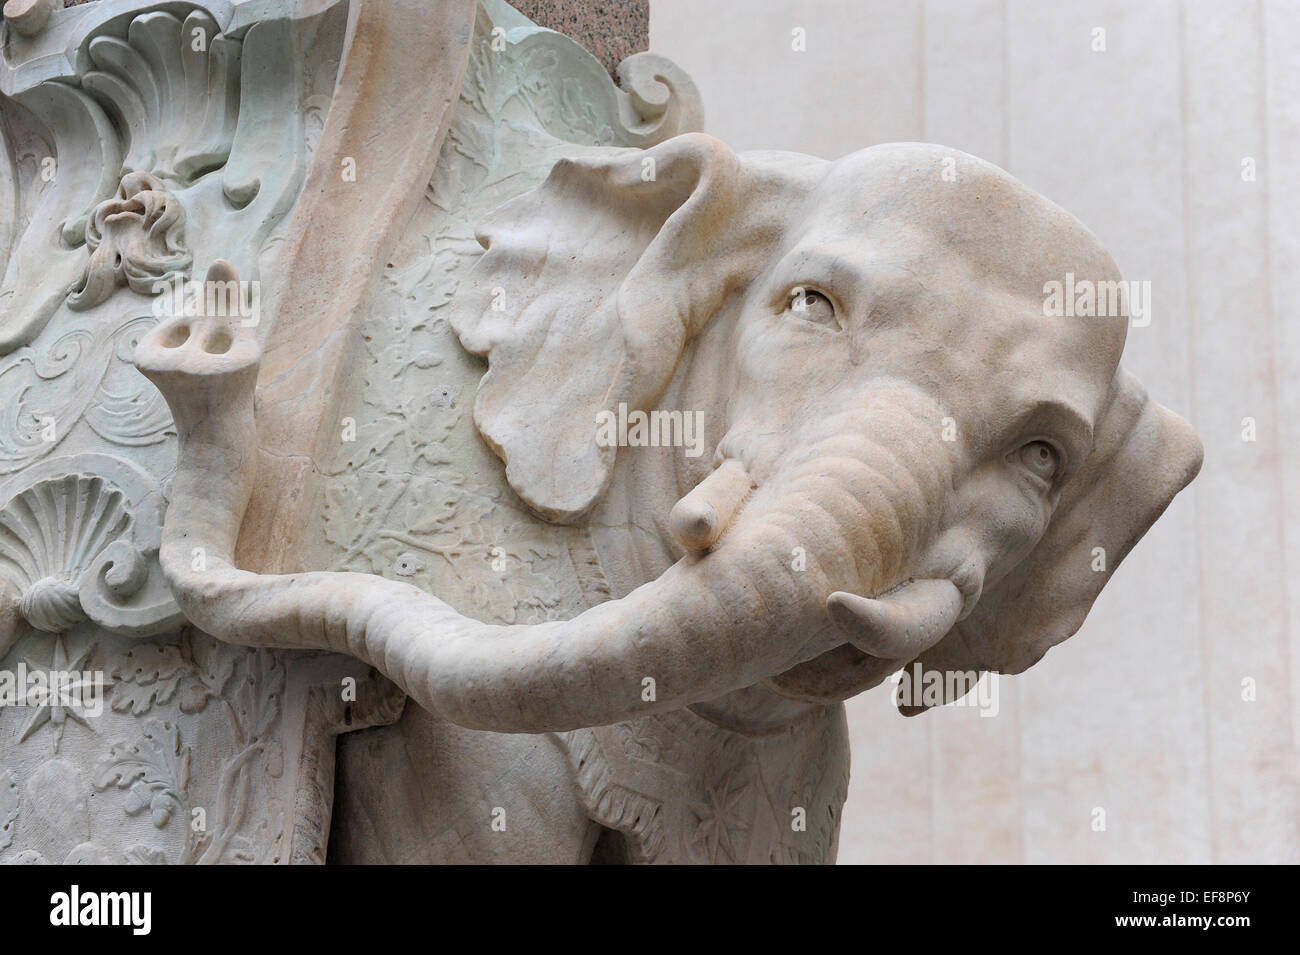 Elephant, sculpture by Bernini, Piazza della Minerva, Rome, Italy Stock Photo